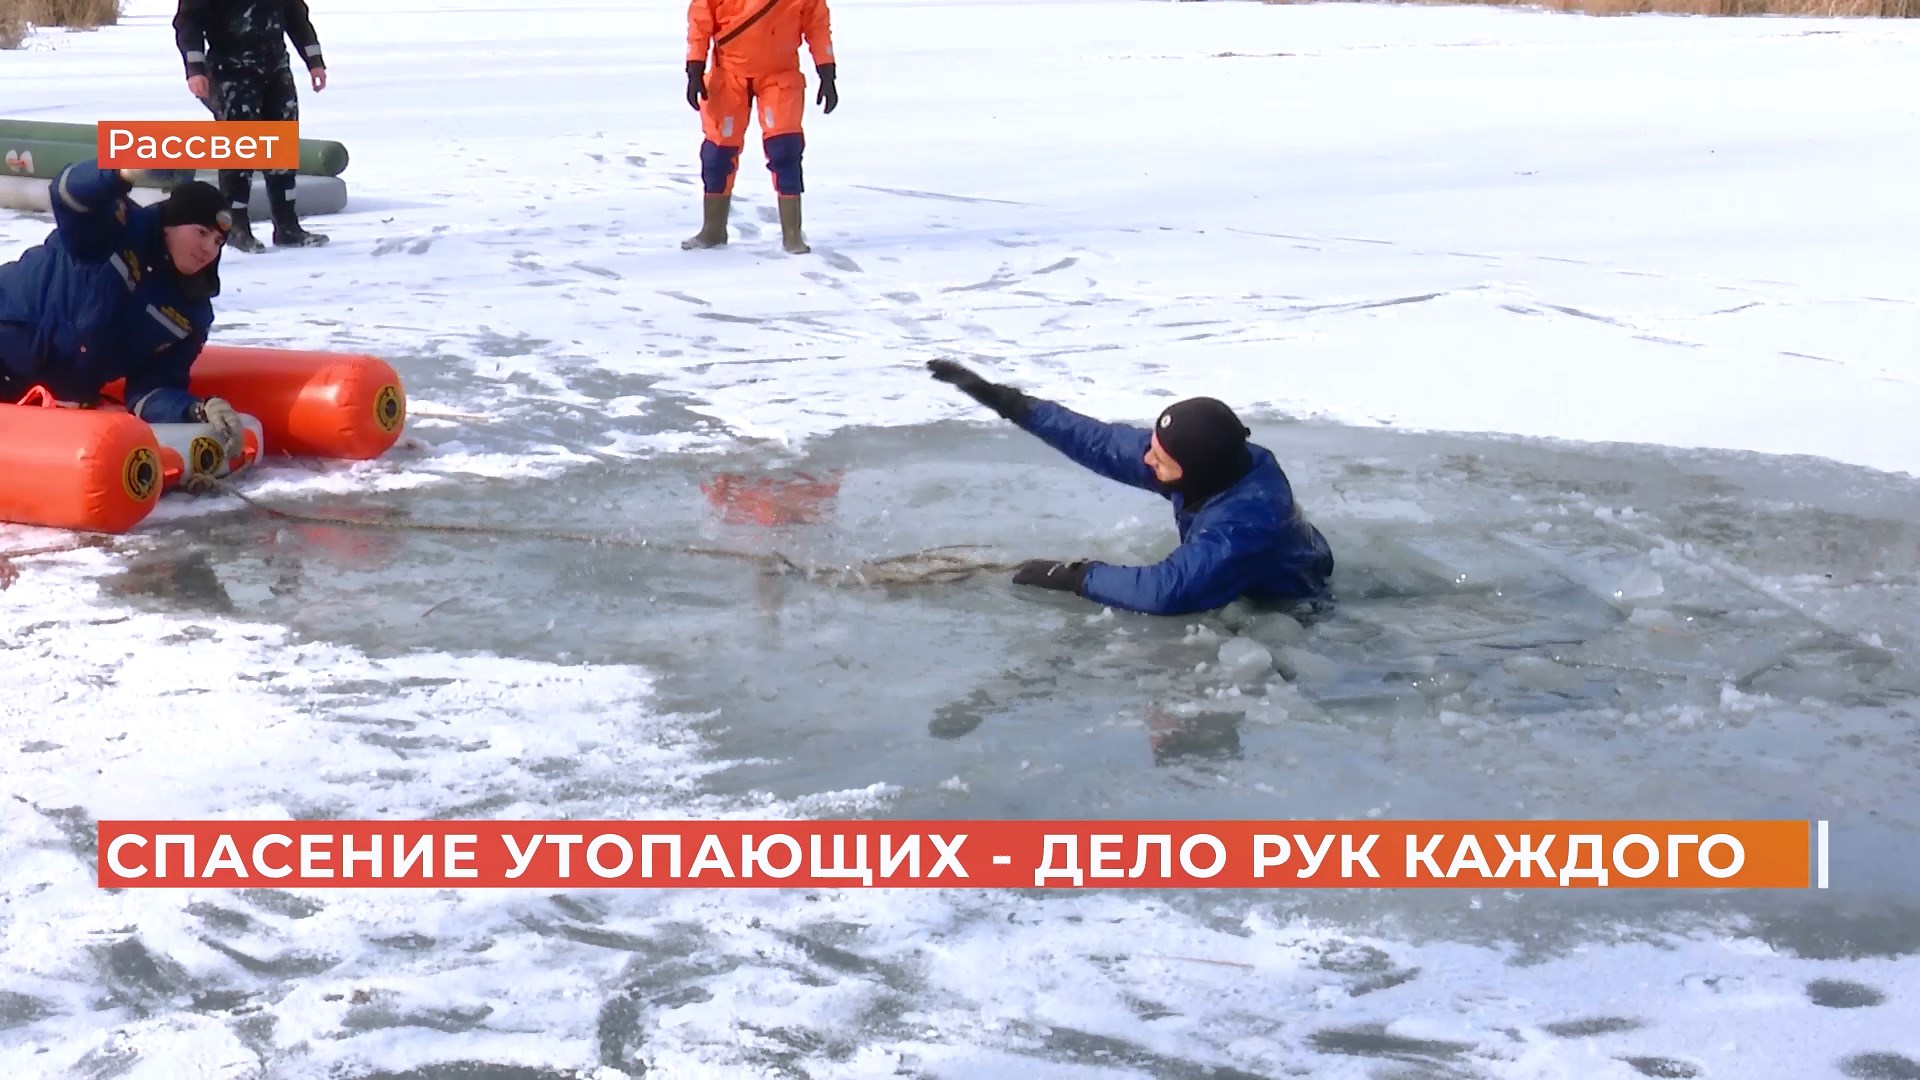 В роли утопающих — журналисты: спасатели показали, как вызволить провалившихся под лёд